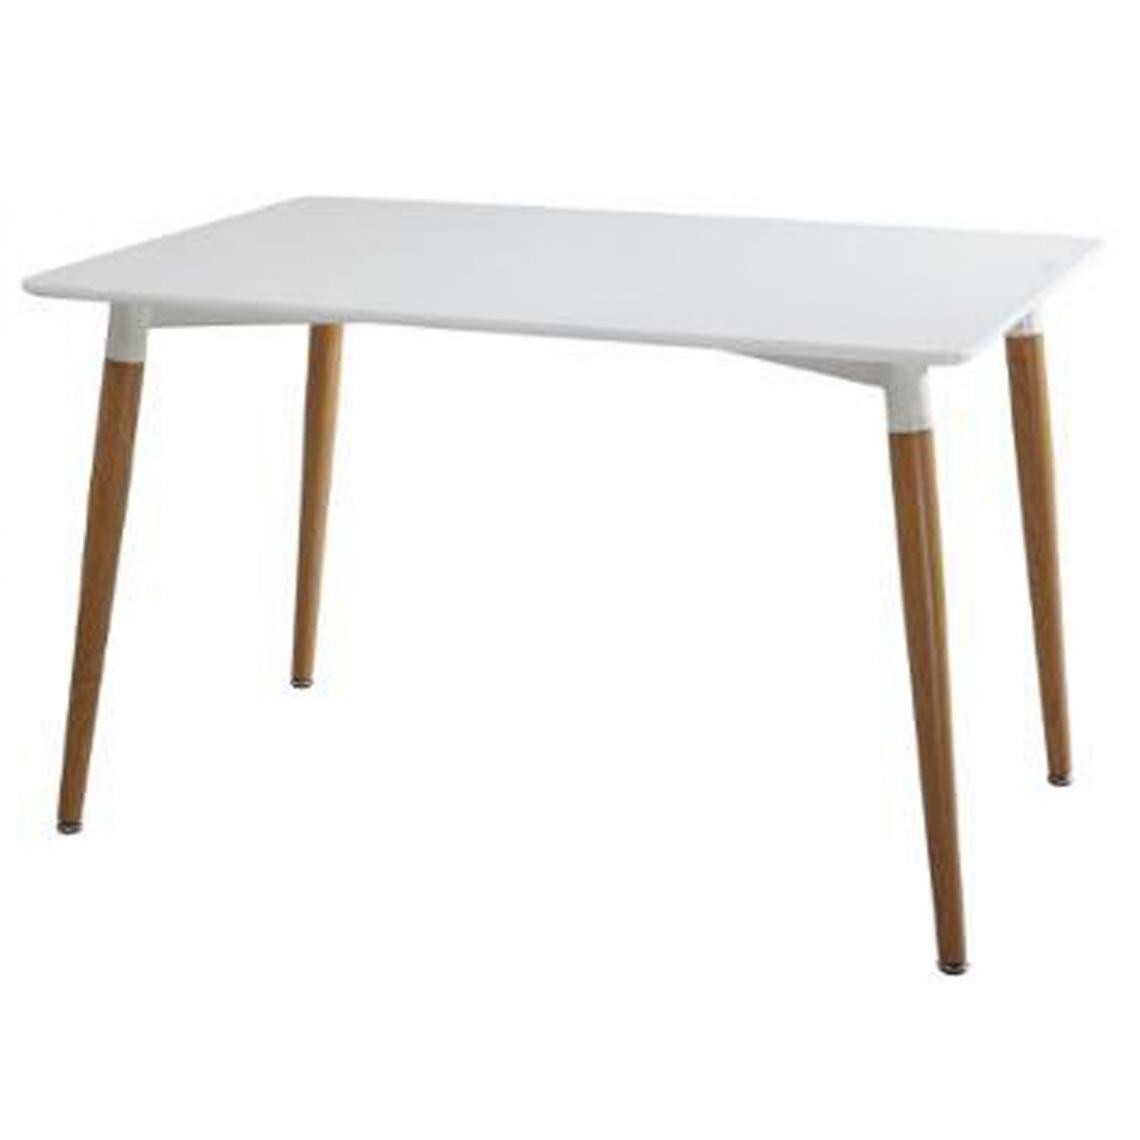 Pegane - Table à manger en acier et MDF coloris blanc - Dim : L 150 x l 80 x H 74 cm - Tables à manger